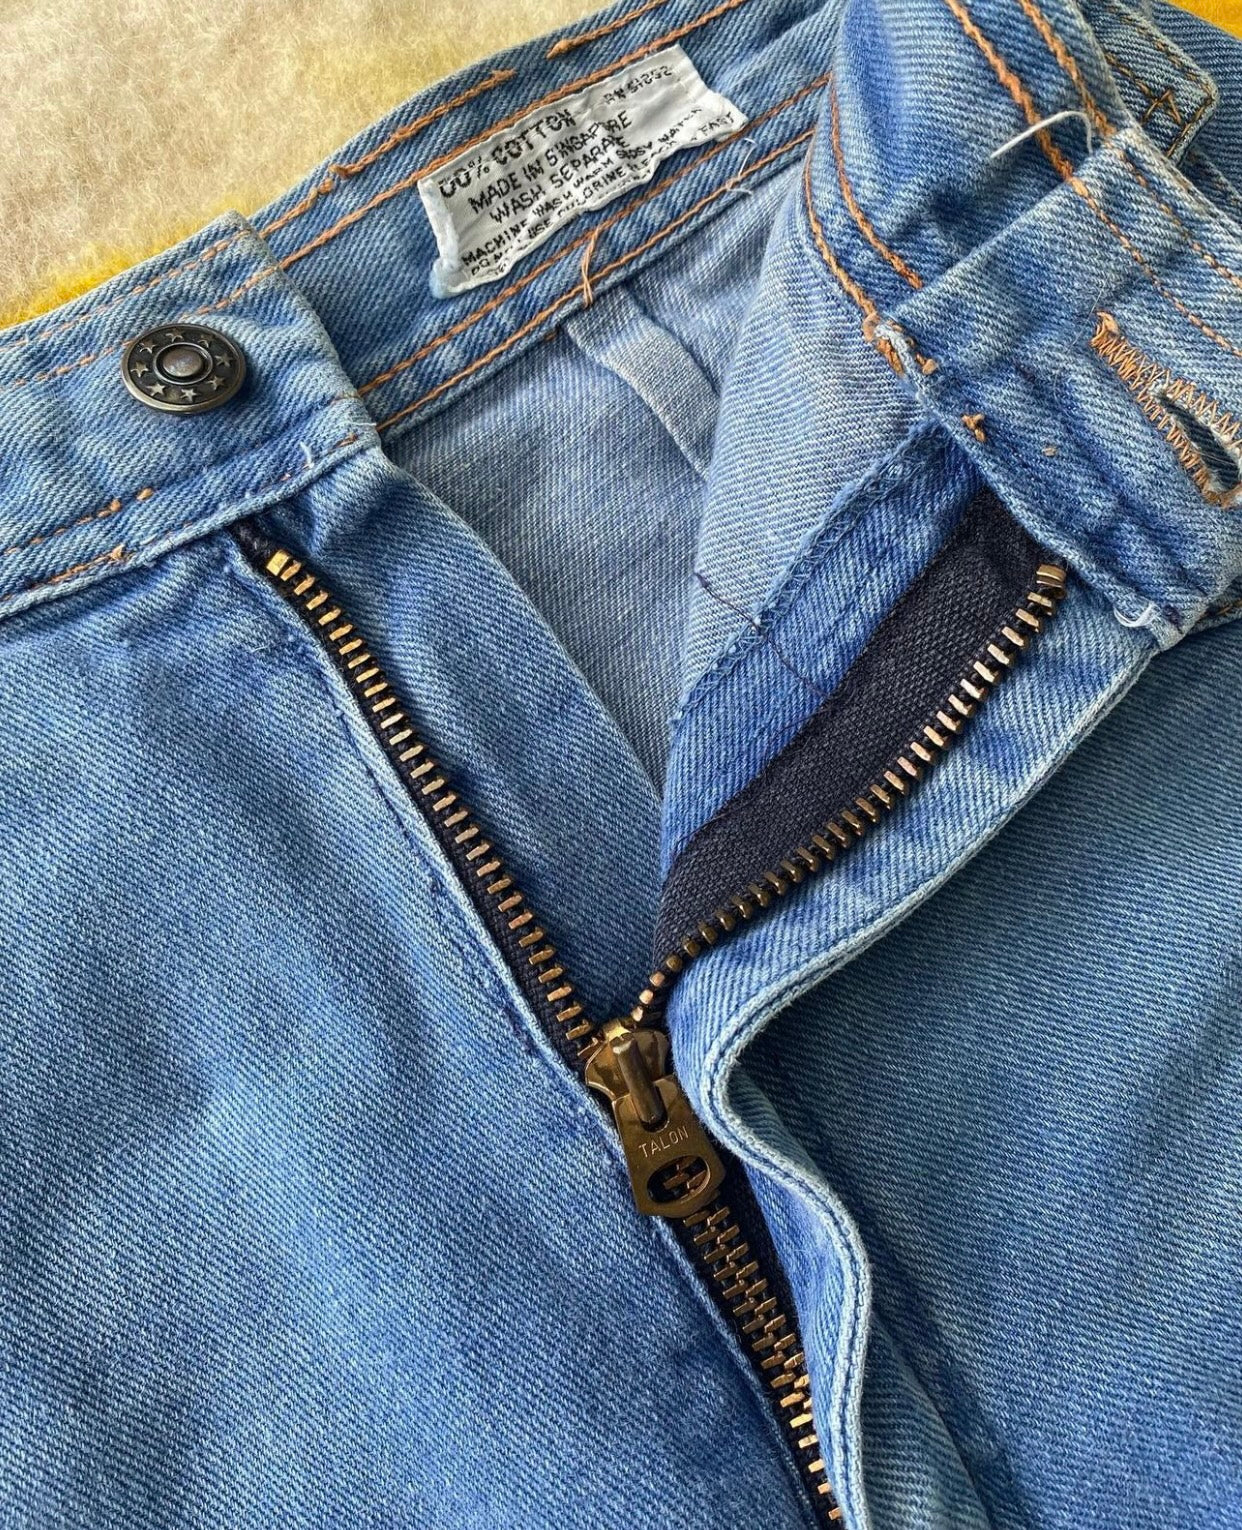 1970s Renard wide leg jeans 25" waist